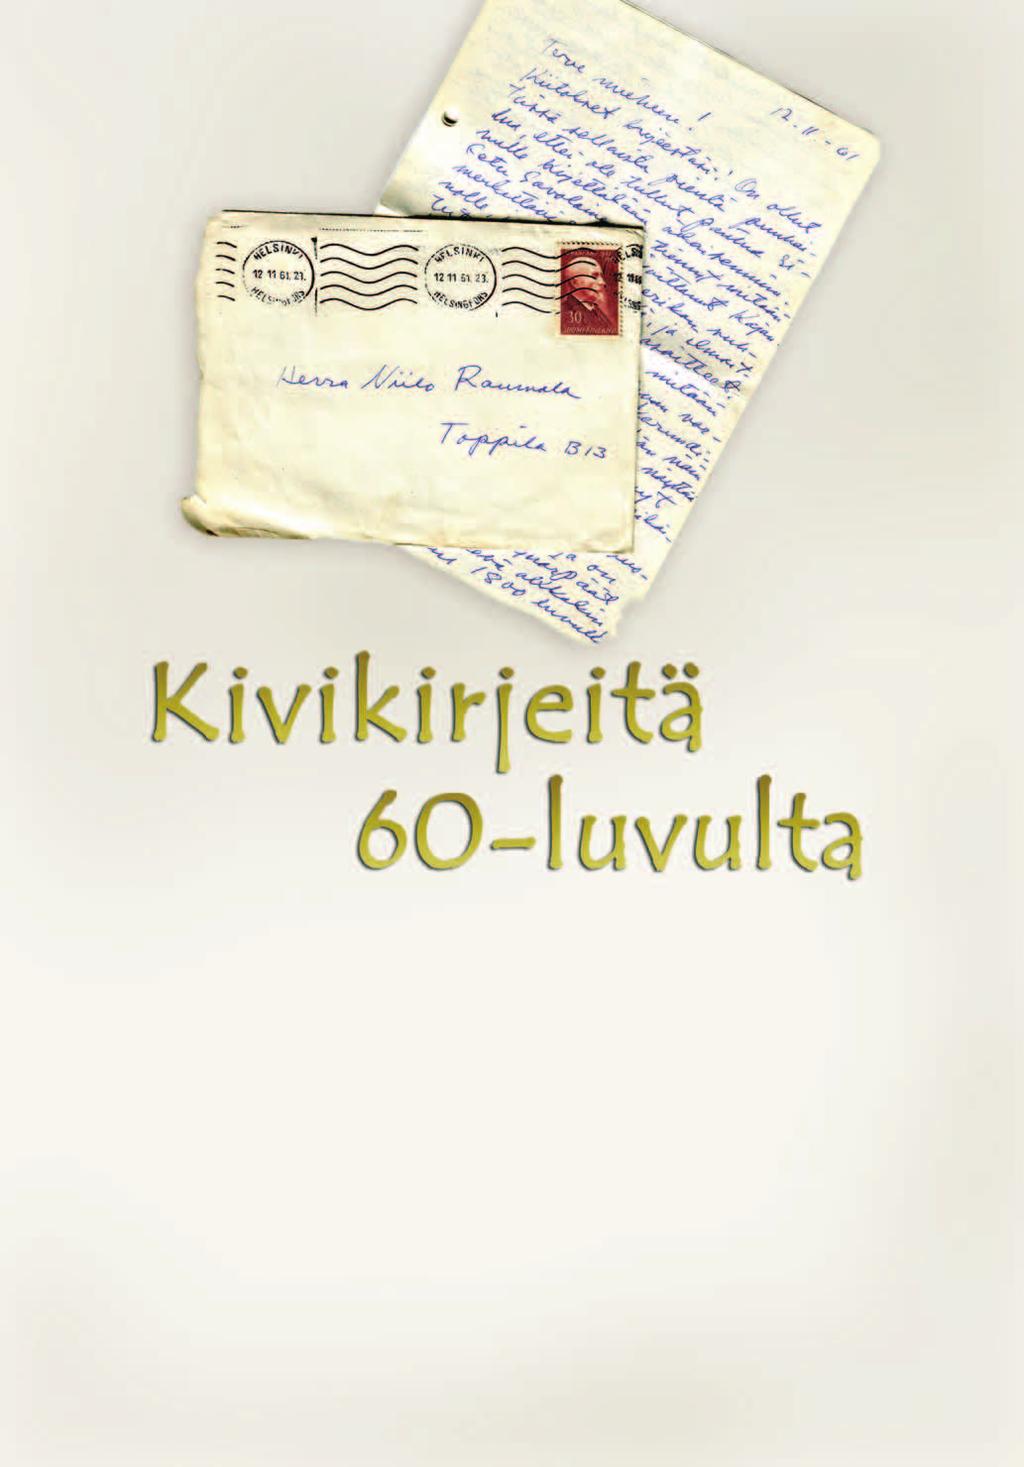 L emmenjoen kultamailla Raumalan kämpän hyllyllä lojui kasa kullankaivaja Niilo Raumalalle postitettuja kirjeitä. Tee mitä tahdot, vastasi Nipa kun kysyin mitä kirjeille pitäisi tehdä.